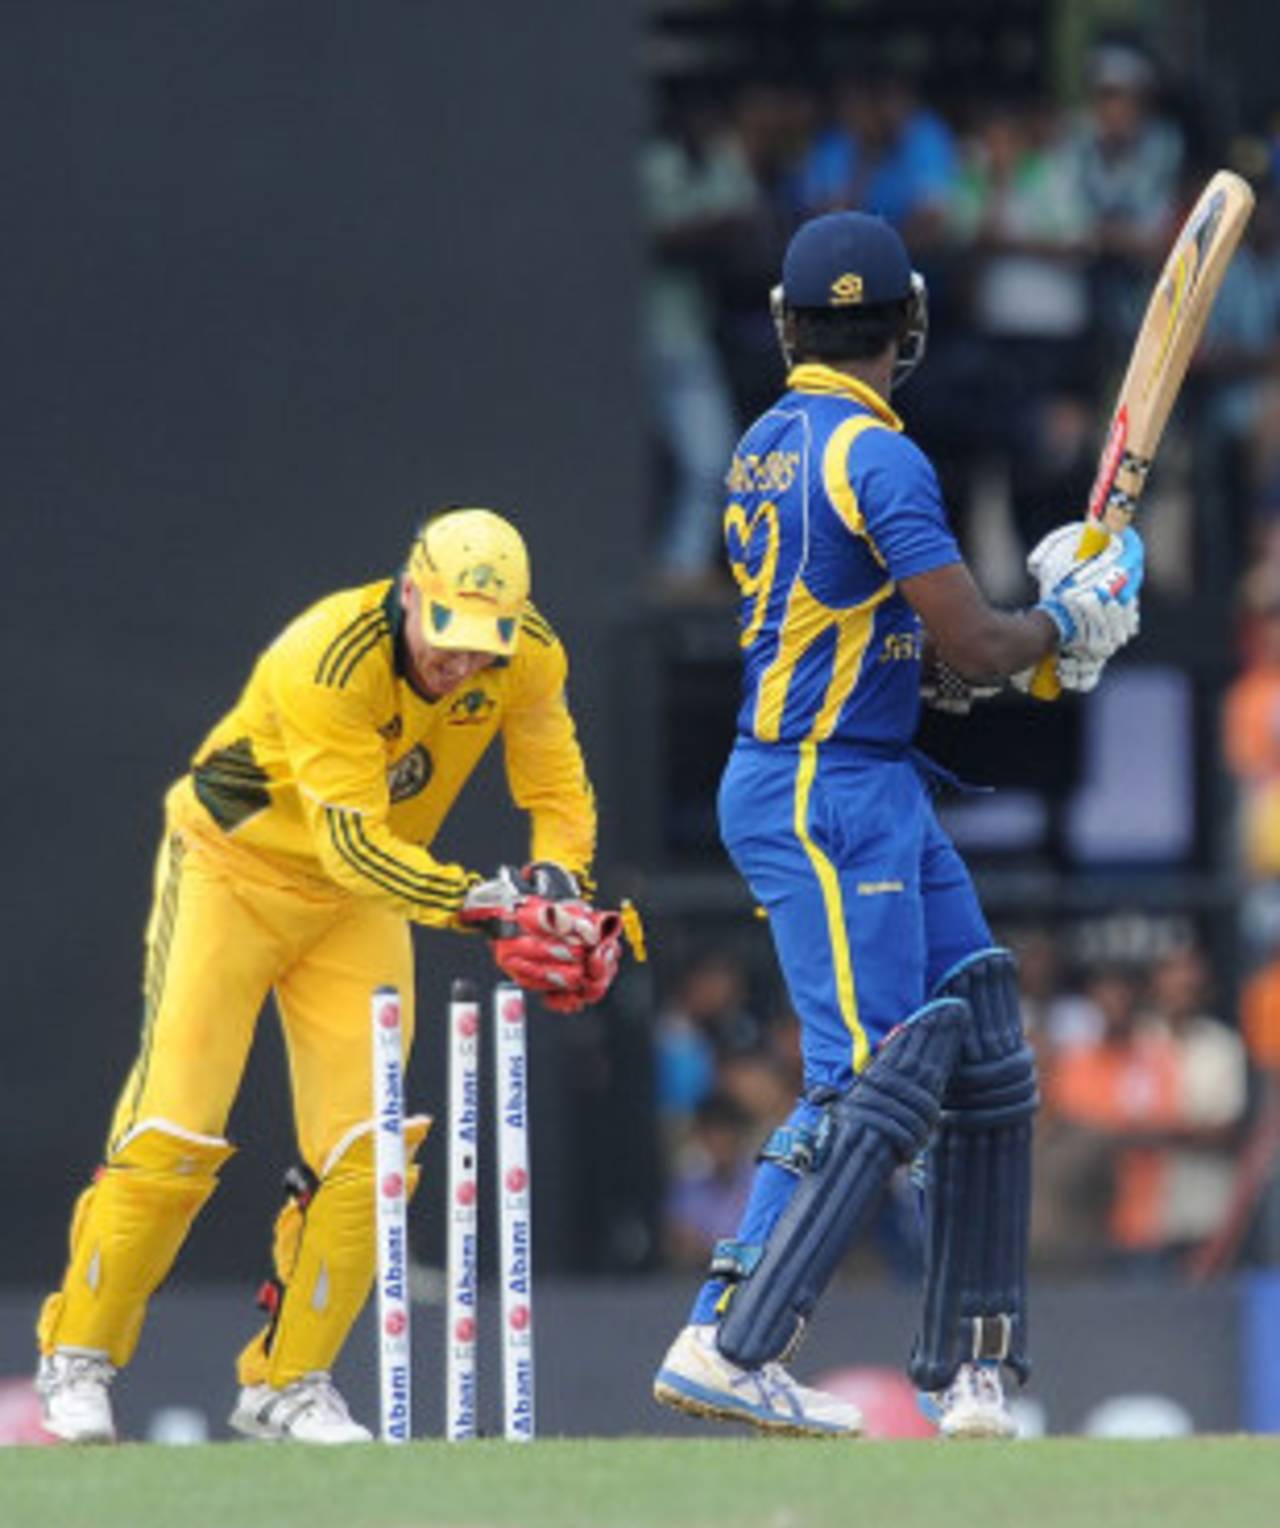 Sri Lanka's batsmen have failed to click as a unit, according to their batting coach Marvan Atapattu&nbsp;&nbsp;&bull;&nbsp;&nbsp;AFP